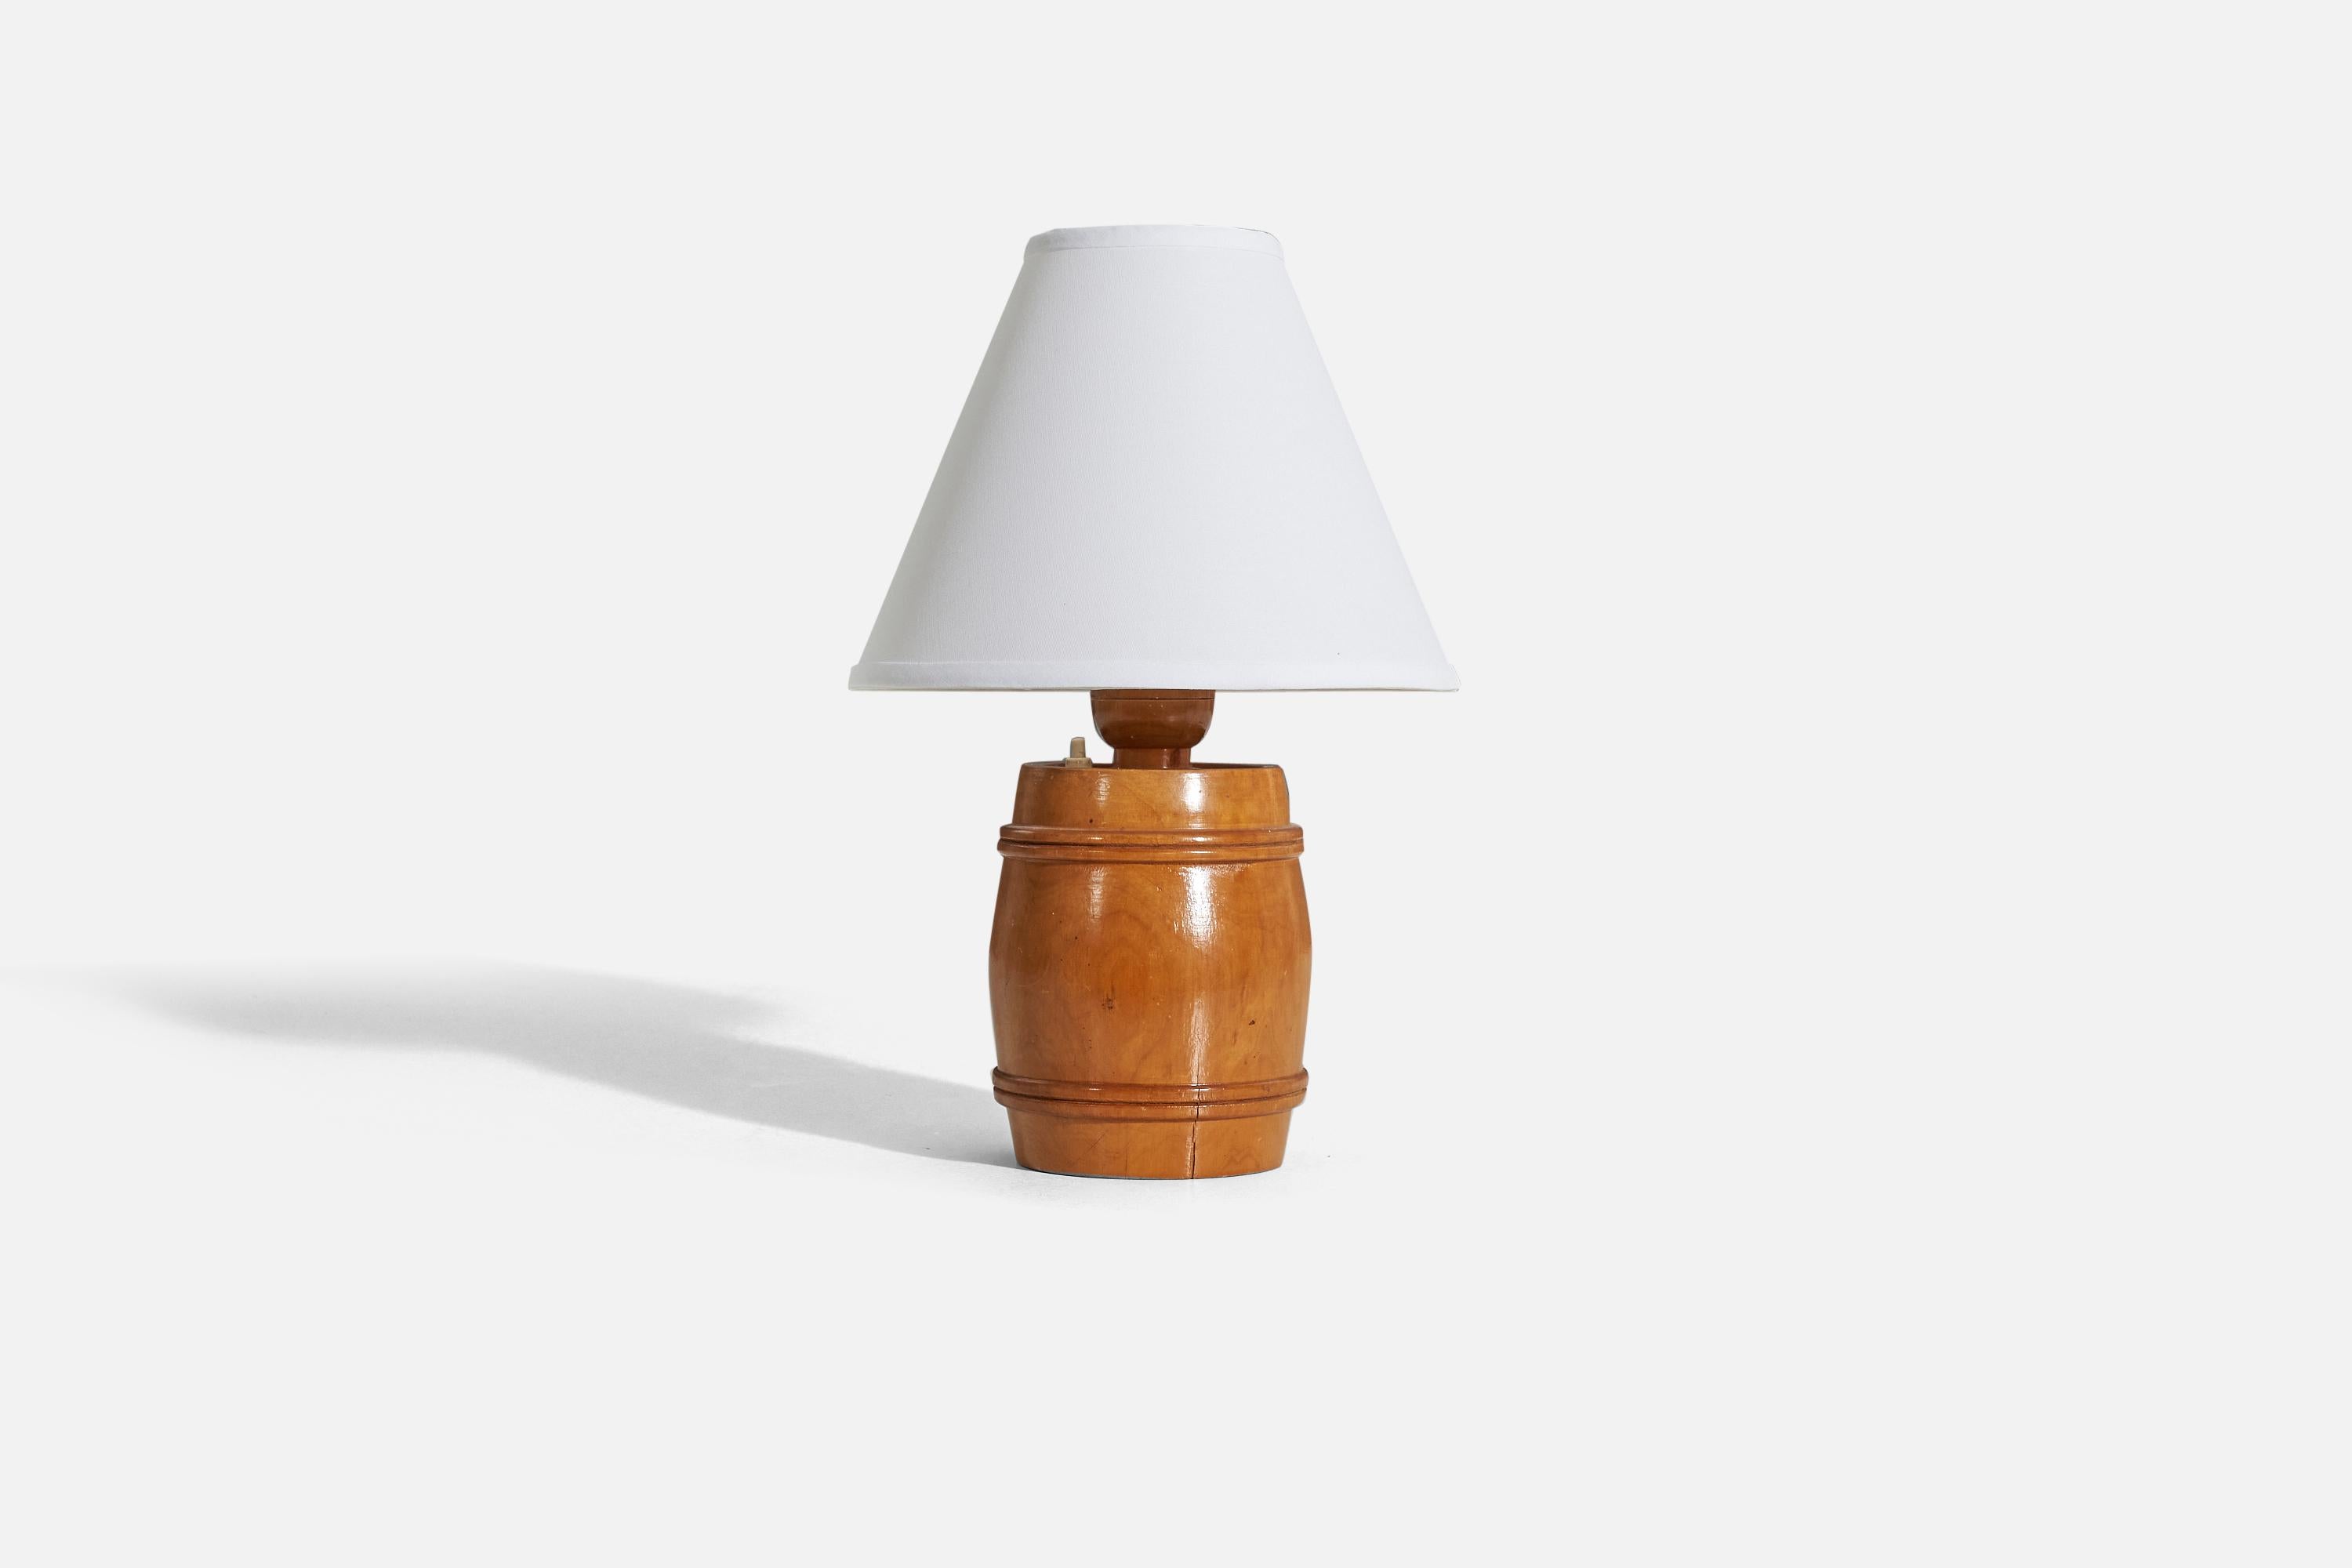 Lampe de table en bois conçue et produite en Suède, années 1950. 

Vendu sans abat-jour. 
Dimensions de la lampe (pouces) : 11,375 x 6 x 6 (H x L x P)
Dimensions de l'abat-jour (pouces) : 4 x 10 x 8 (T x B x H)
Dimensions de la lampe avec